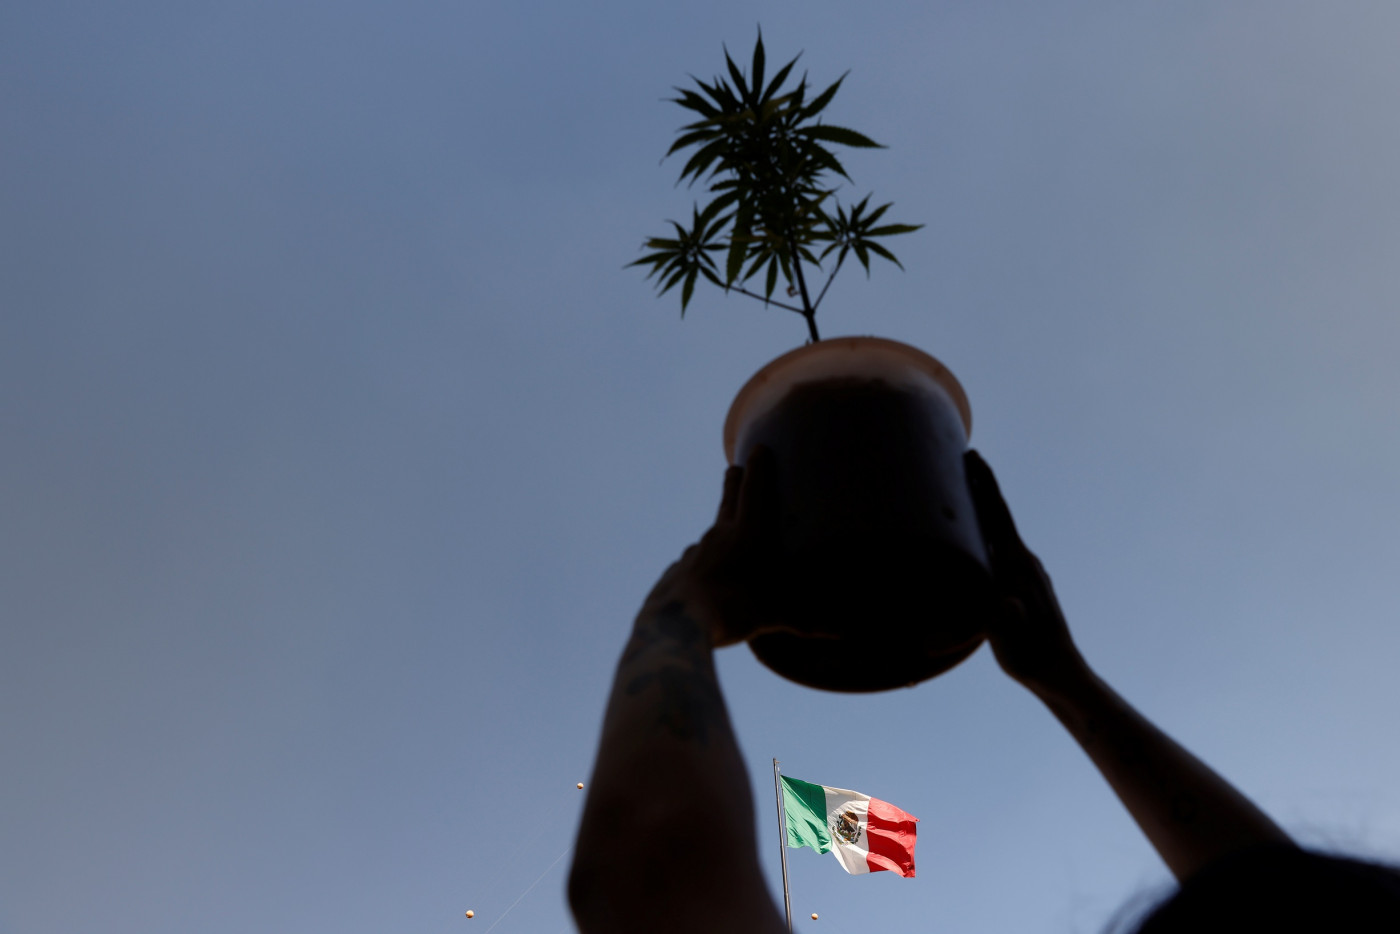 Em primeiro plano, duas mãos seguram um vaso com uma planta contra a luz; atrás, uma bandeira do México nas cores verde, branca e vermelha flamula sob um céu azul